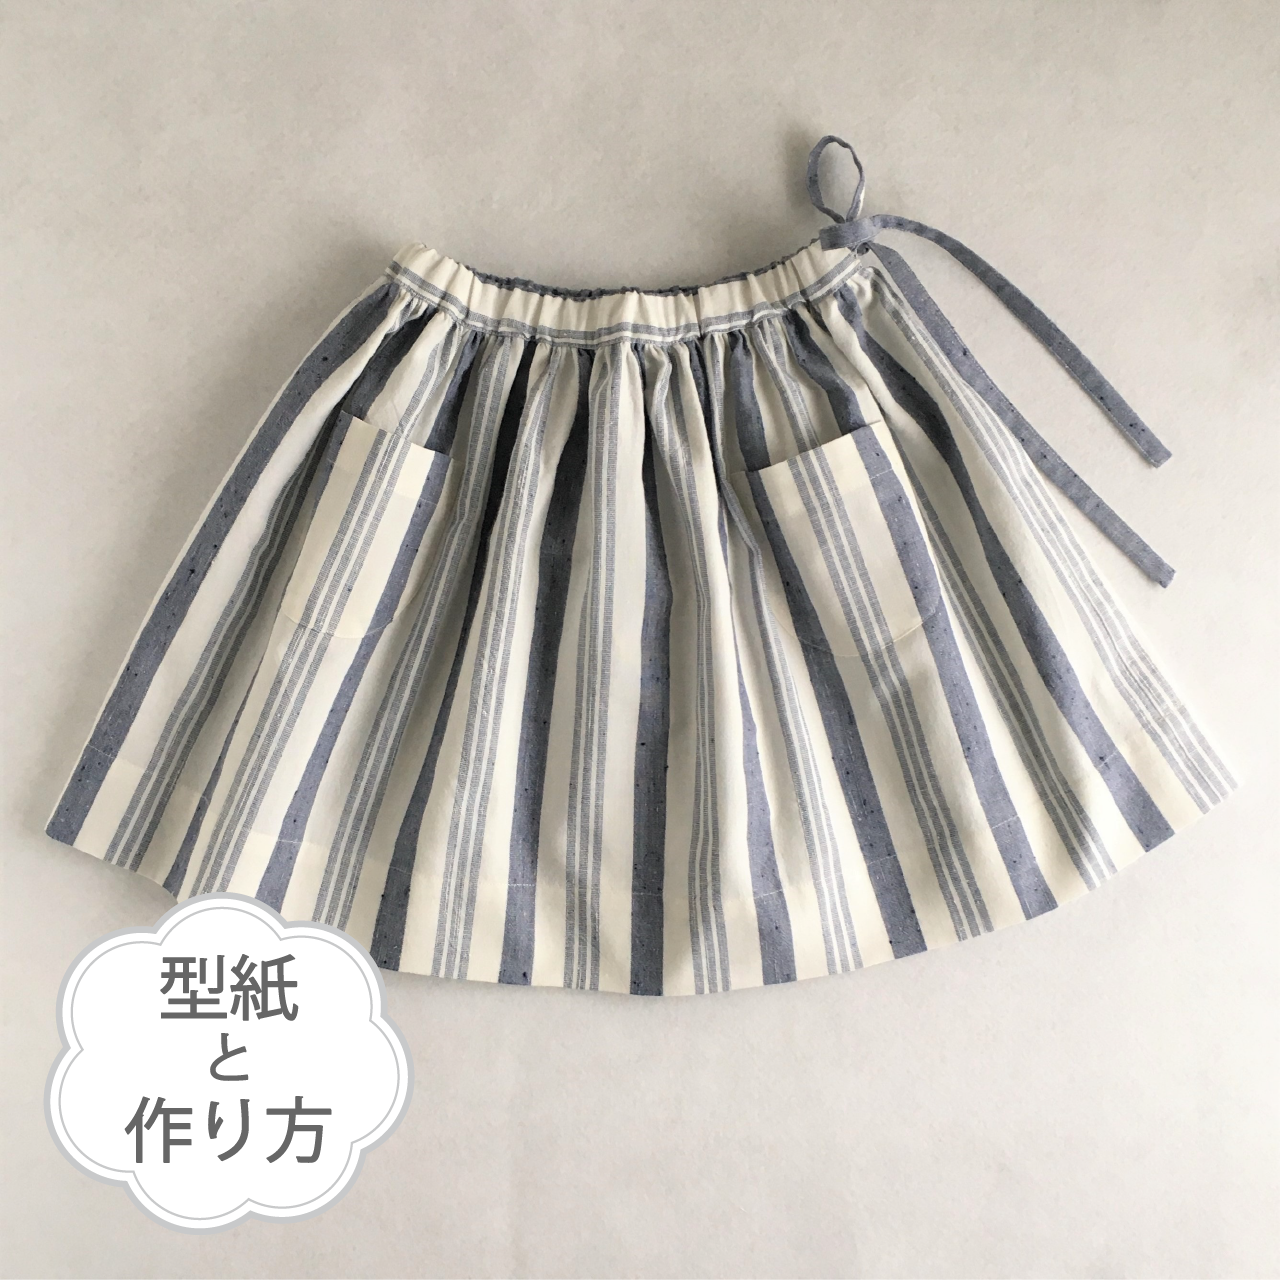 ギャザースカート 70 130サイズ 型紙 作り方のセット To Bo 1905 Ki Bo 1905 子供服の型紙ショップ Tsukuro ツクロ